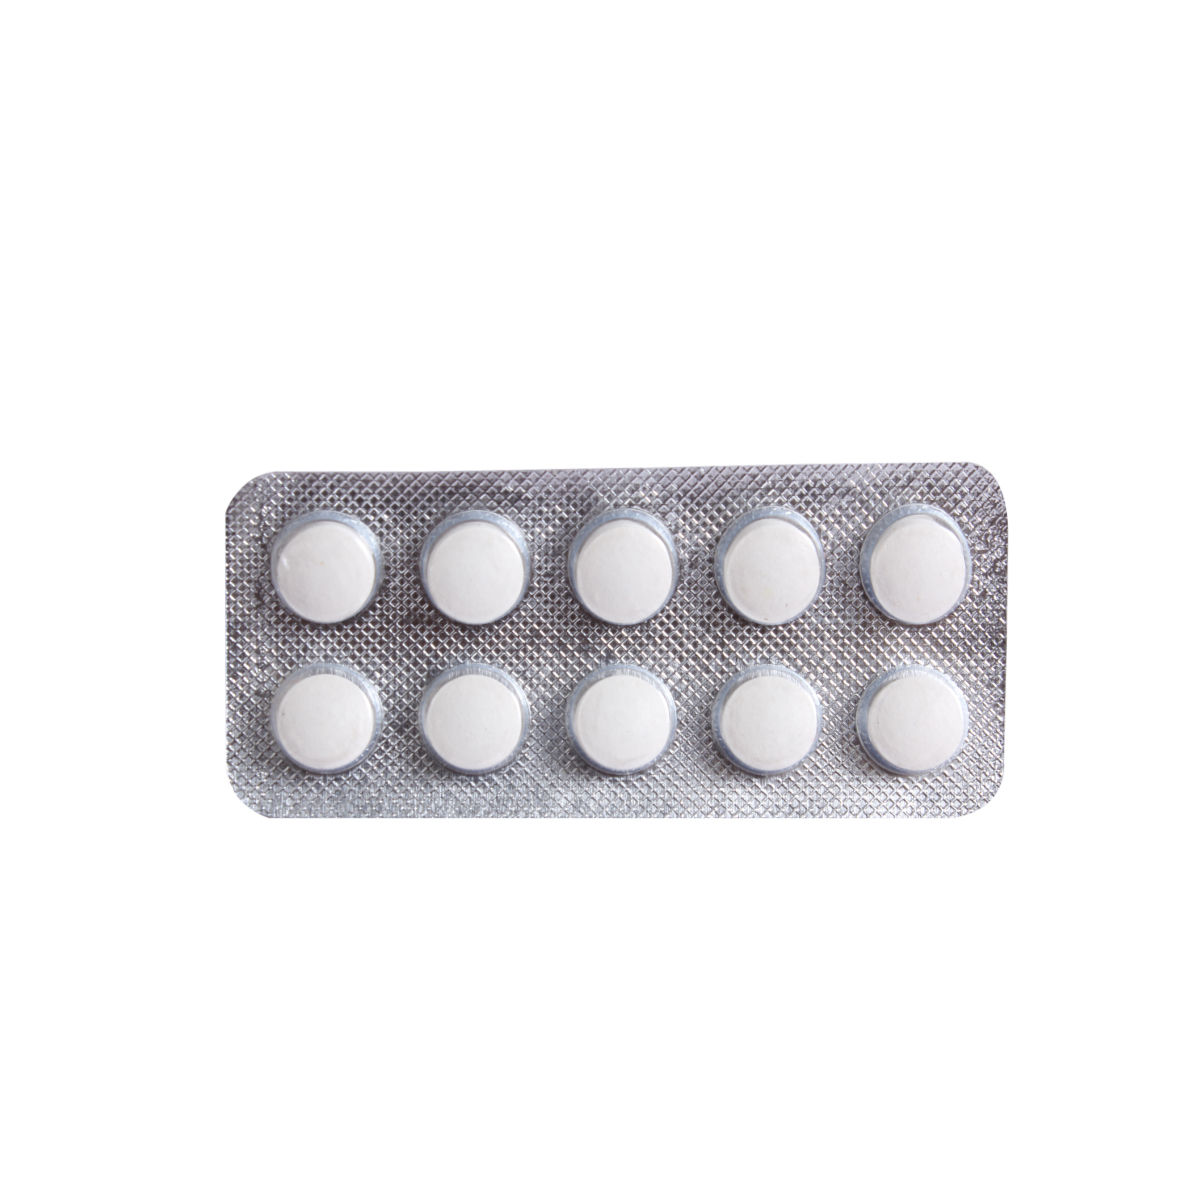 Buy Flavomark 200 mg Tablet 10's Online